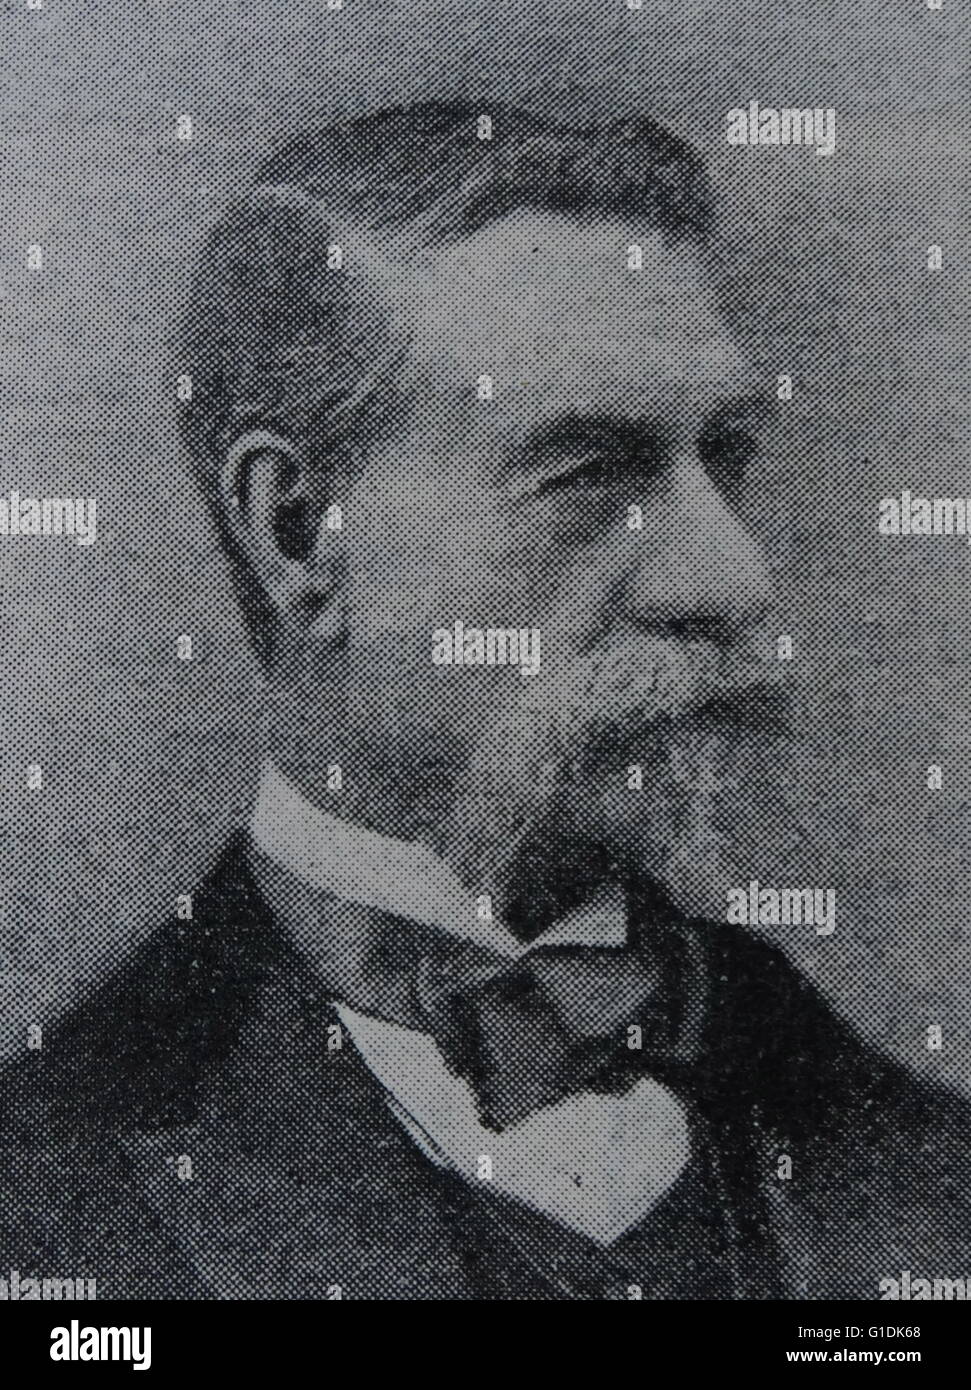 Portrait photographique de sir Richard Temple, 1 baronnet (1826-1902) un administrateur dans l'Inde britannique et un homme politique britannique. Datée 1890 Banque D'Images